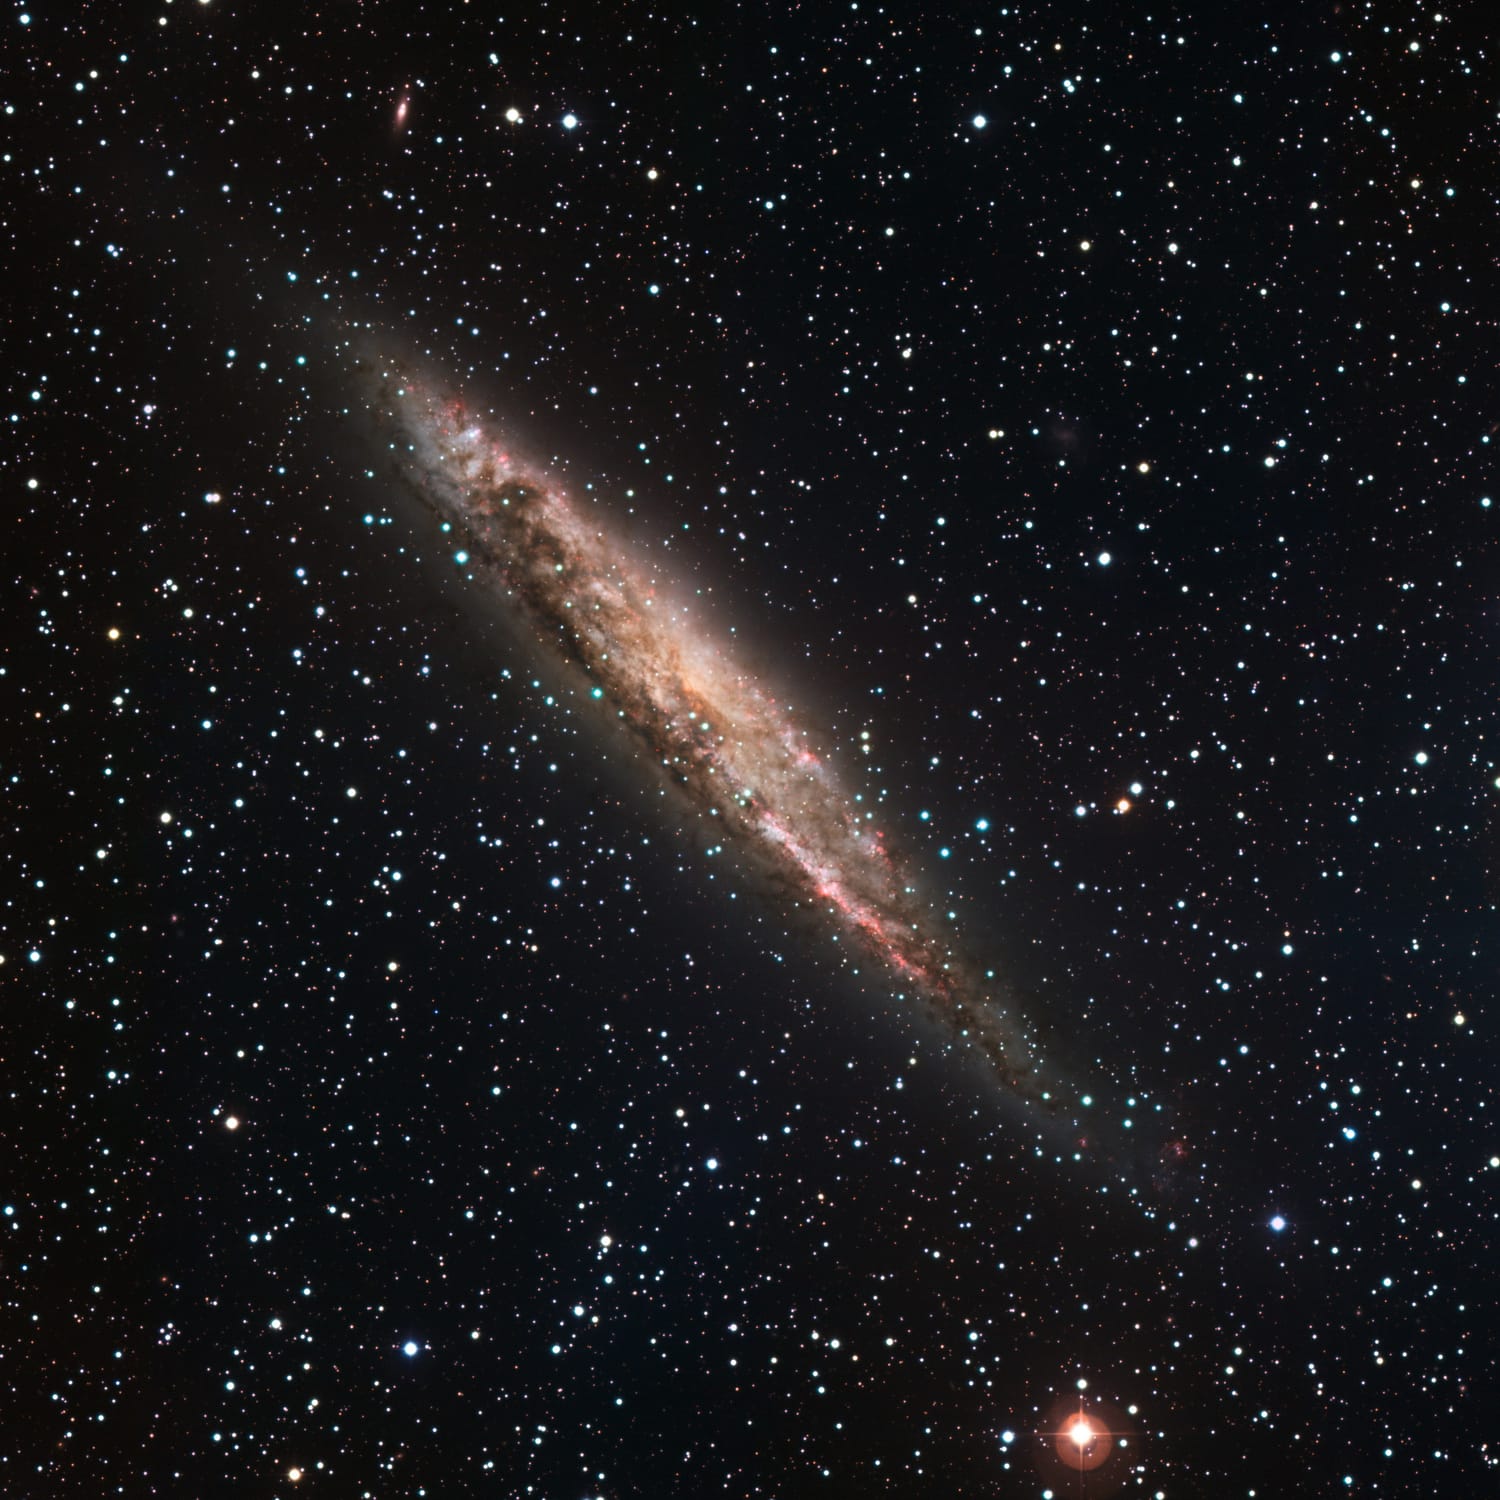 Die Spiralgalaxie NGC 4945 erscheint spindelförmig, weil wir sie von der Kante sehen